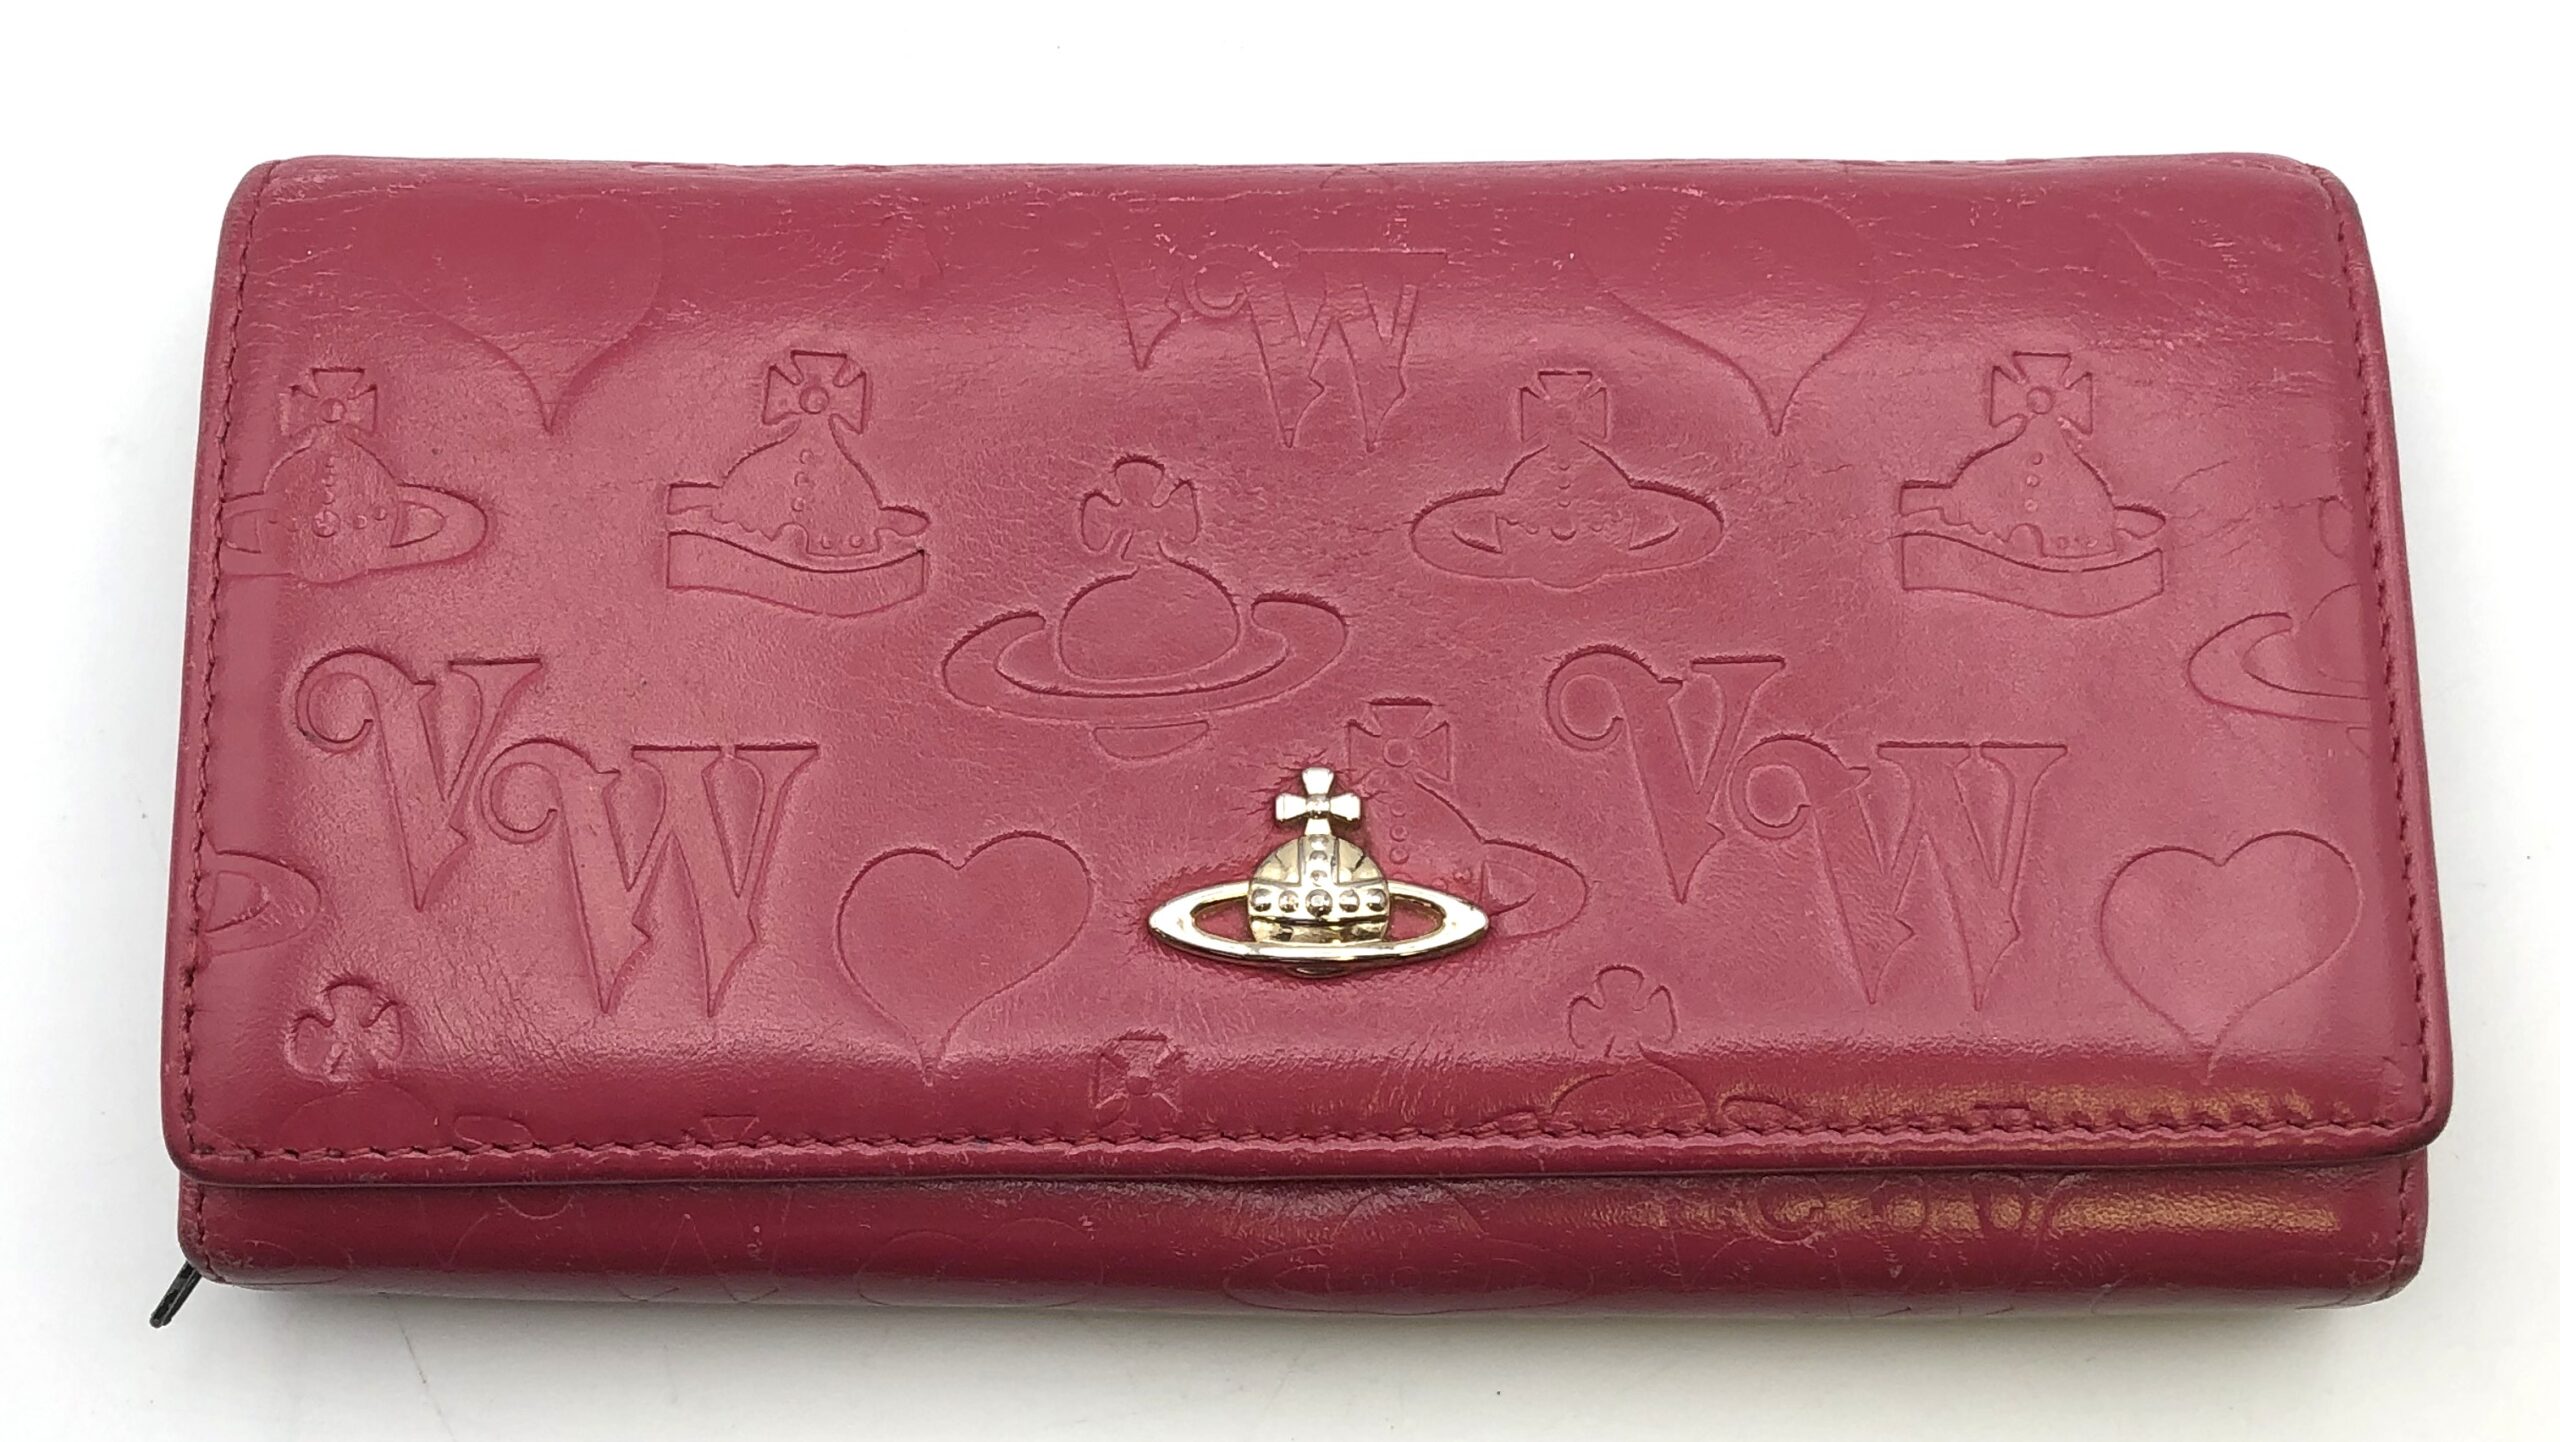 ヴィヴィアンウエストウッドのイタリー製長財布を買取しました。